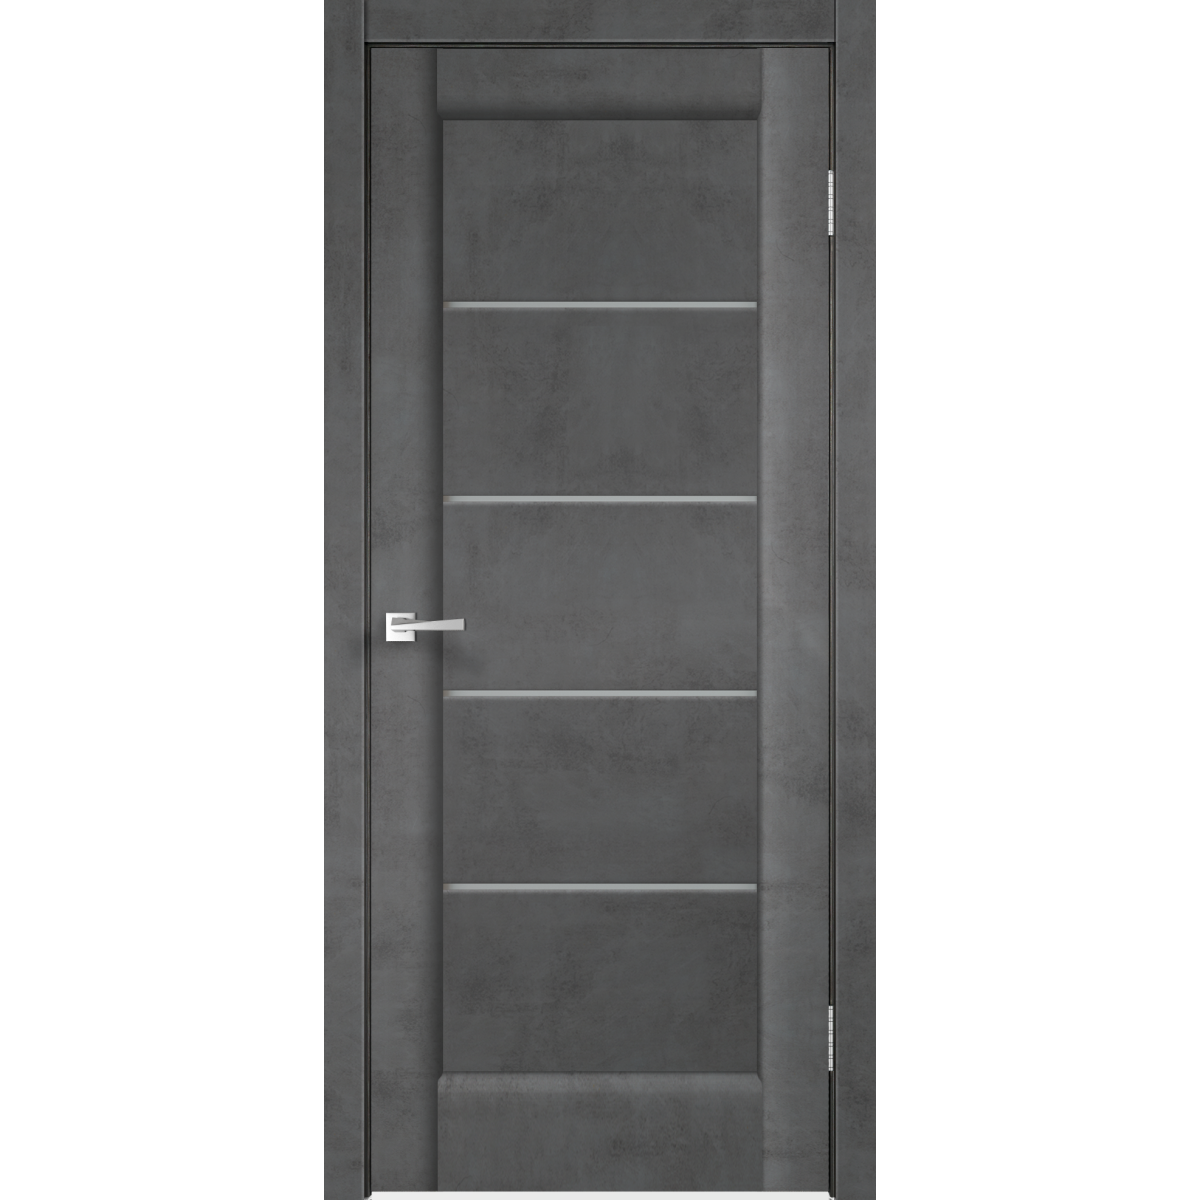 Дверь межкомнатная остеклённая «Сохо», 60x200 см, ПВХ, цвет лофт тёмный, с фурнитурой